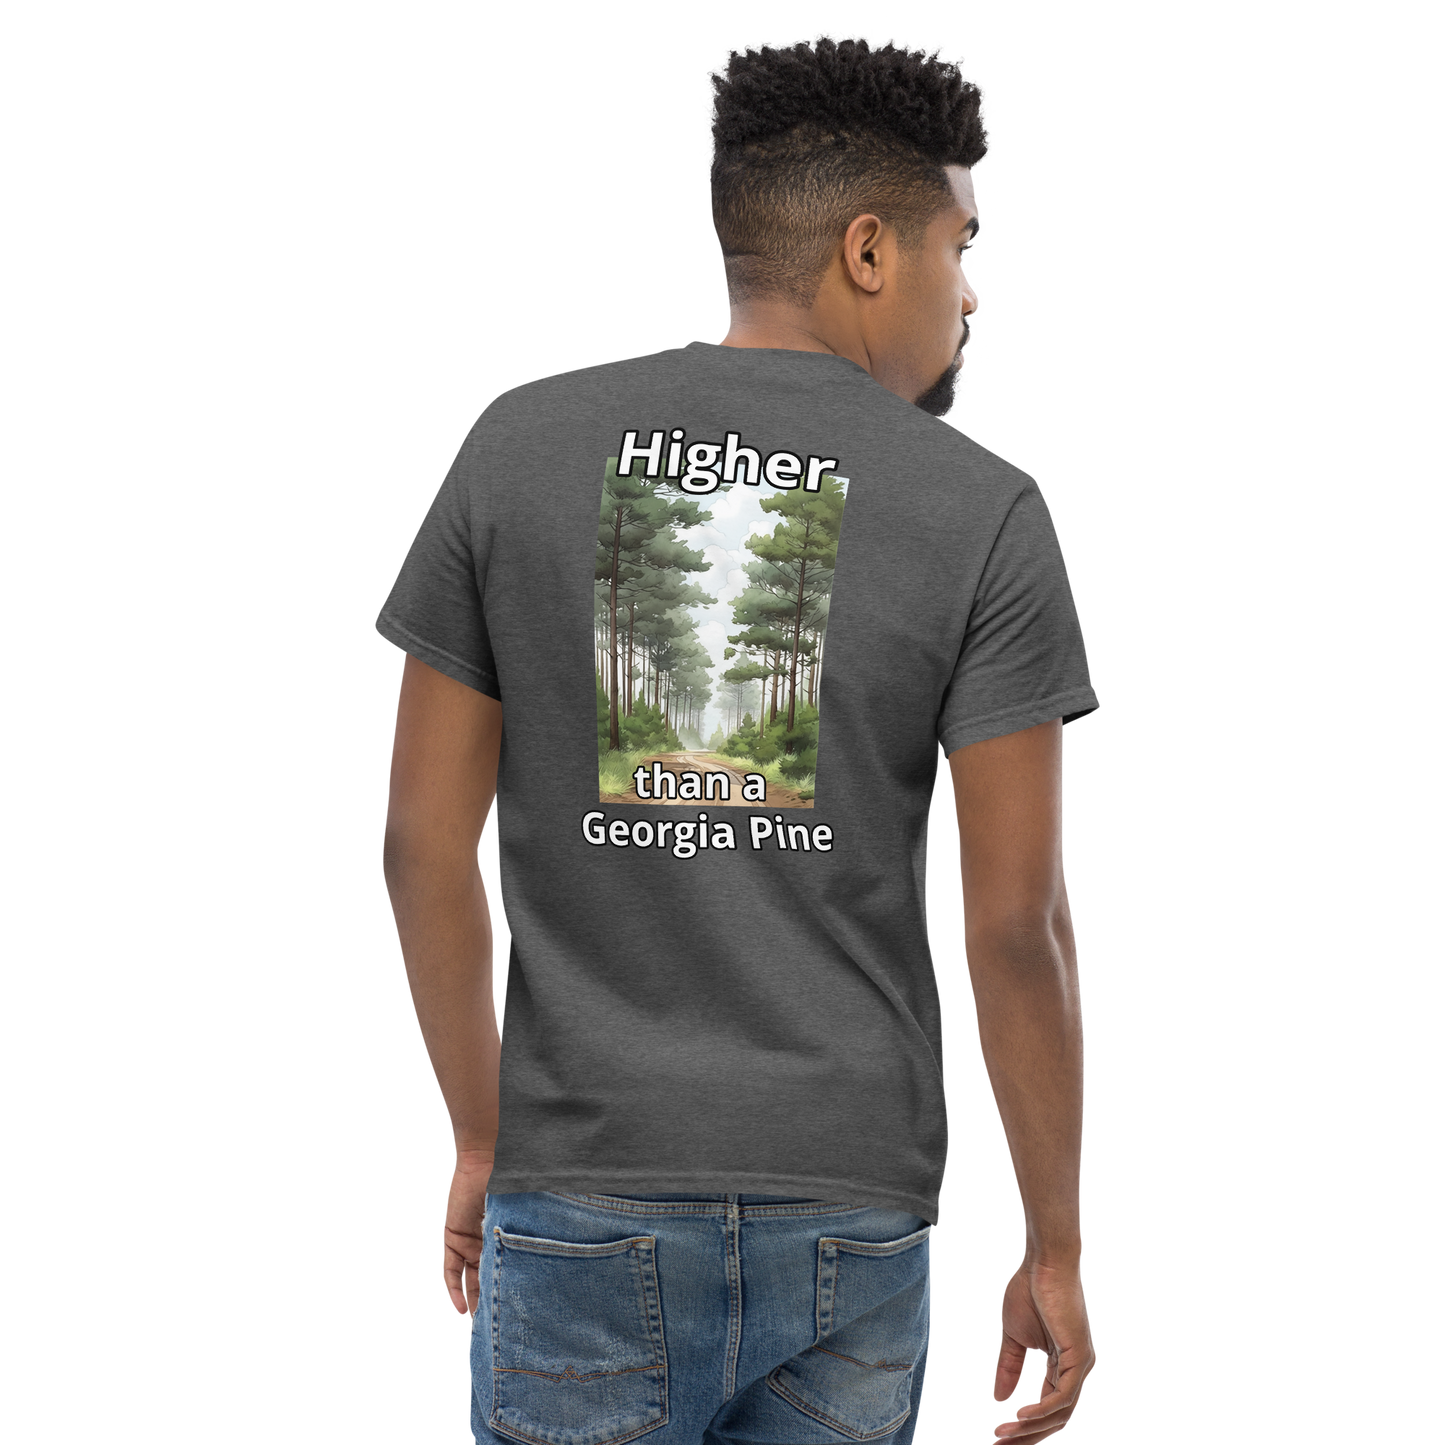 Higher than a Georgia Pine T-Shirt